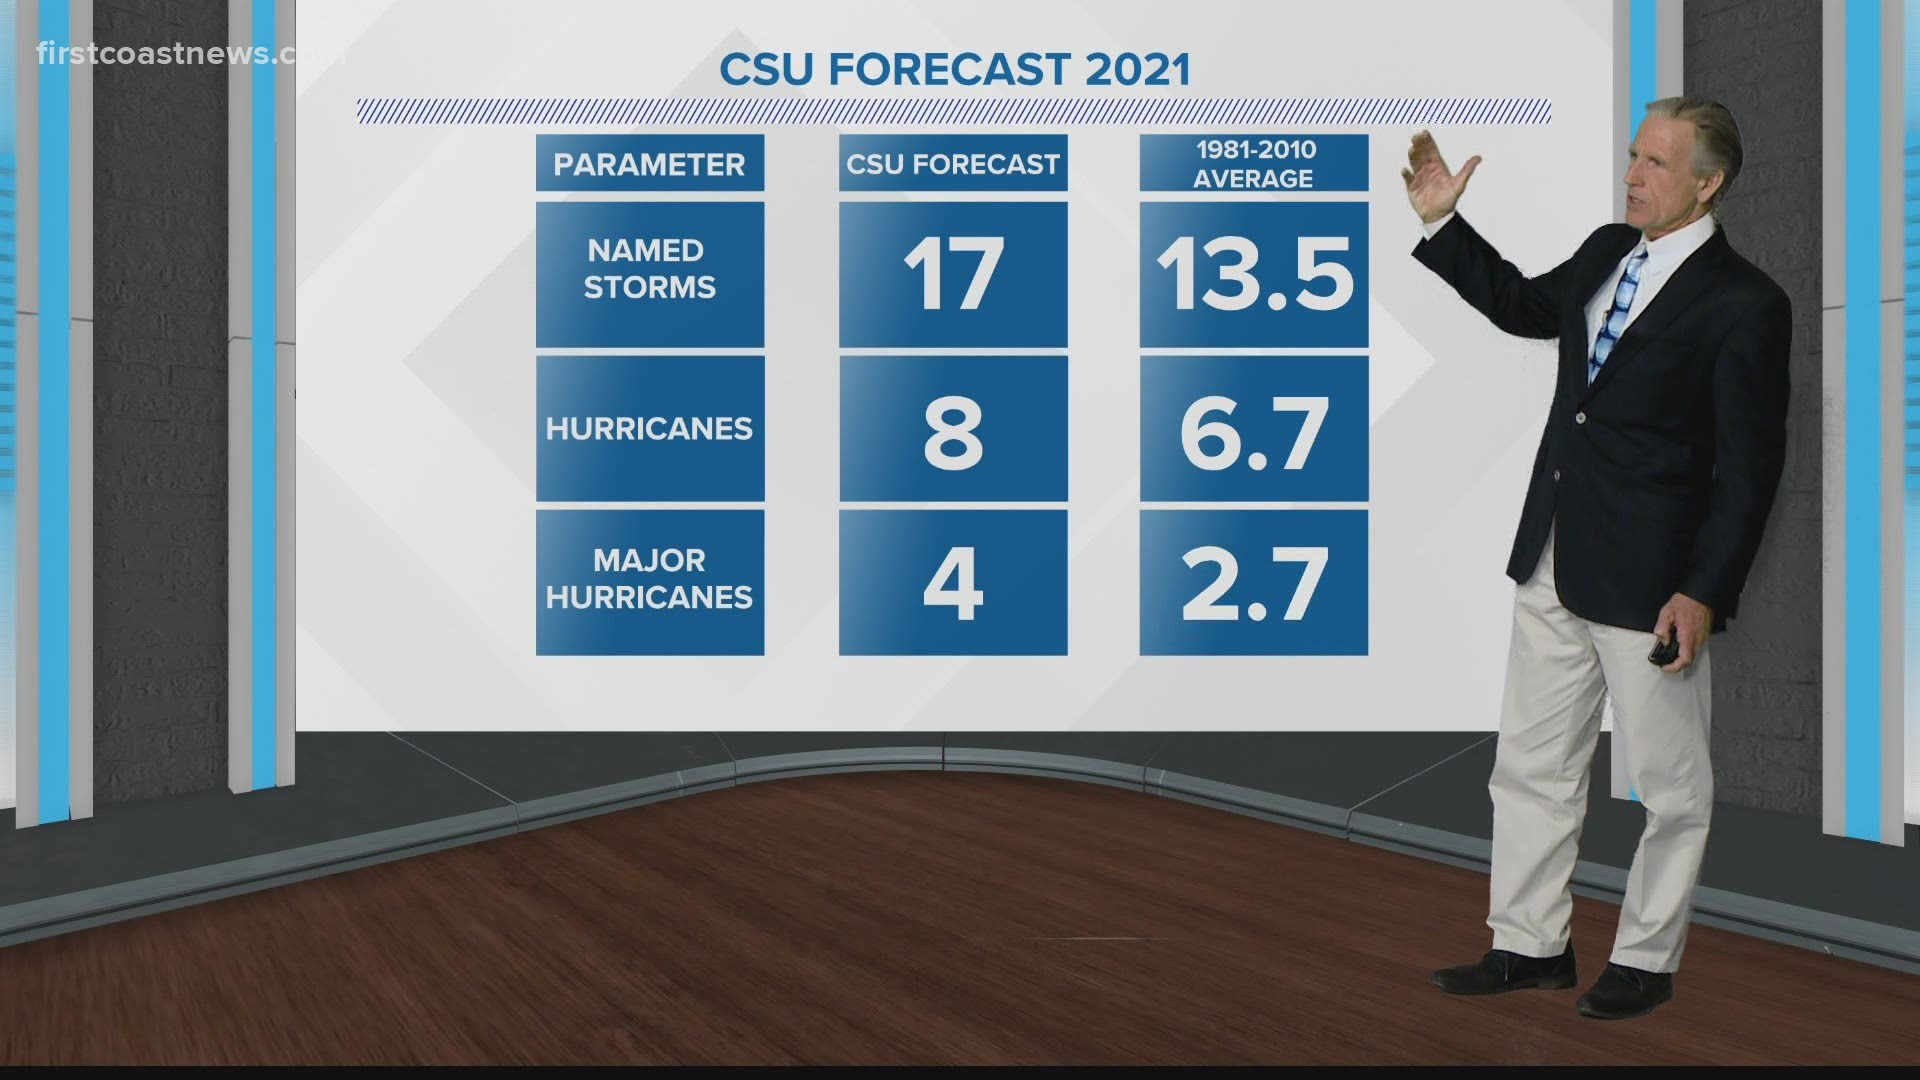 Tim Deegan breaks down Hurricane forecast for 2021